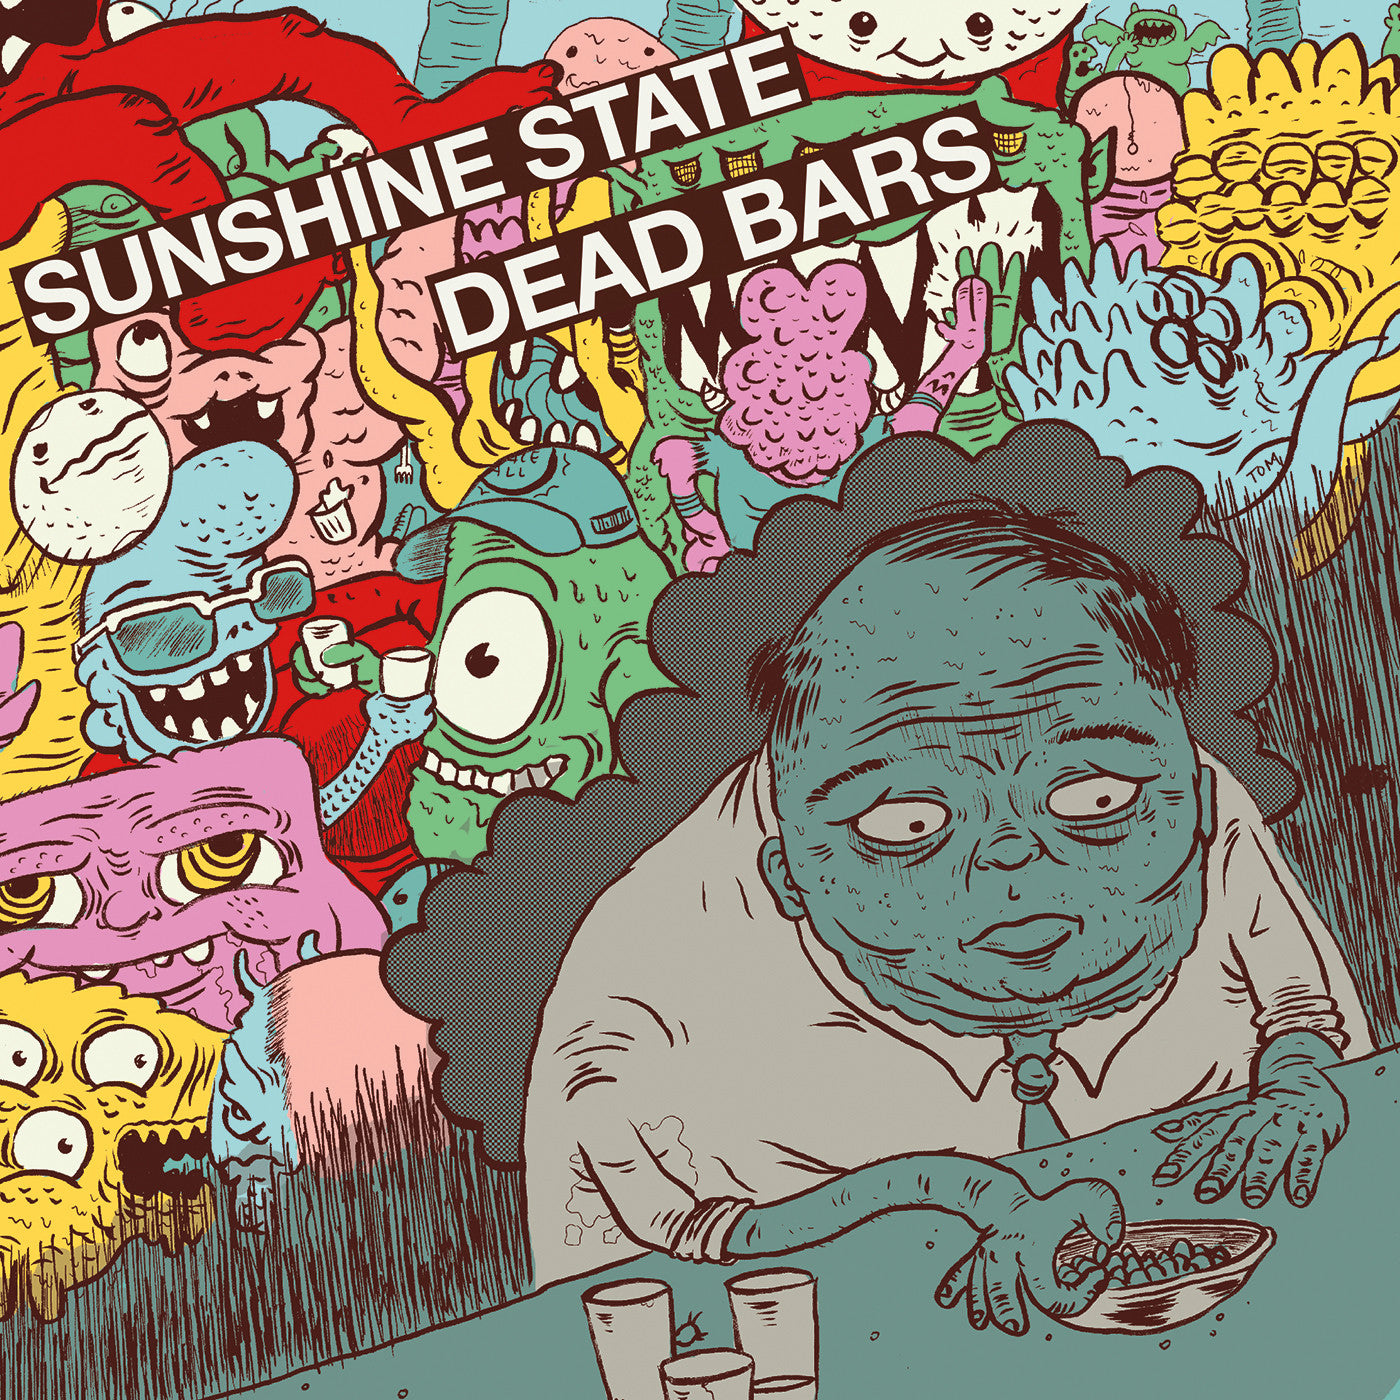 DEAD BARS / SUNSHINE STATE "Split"